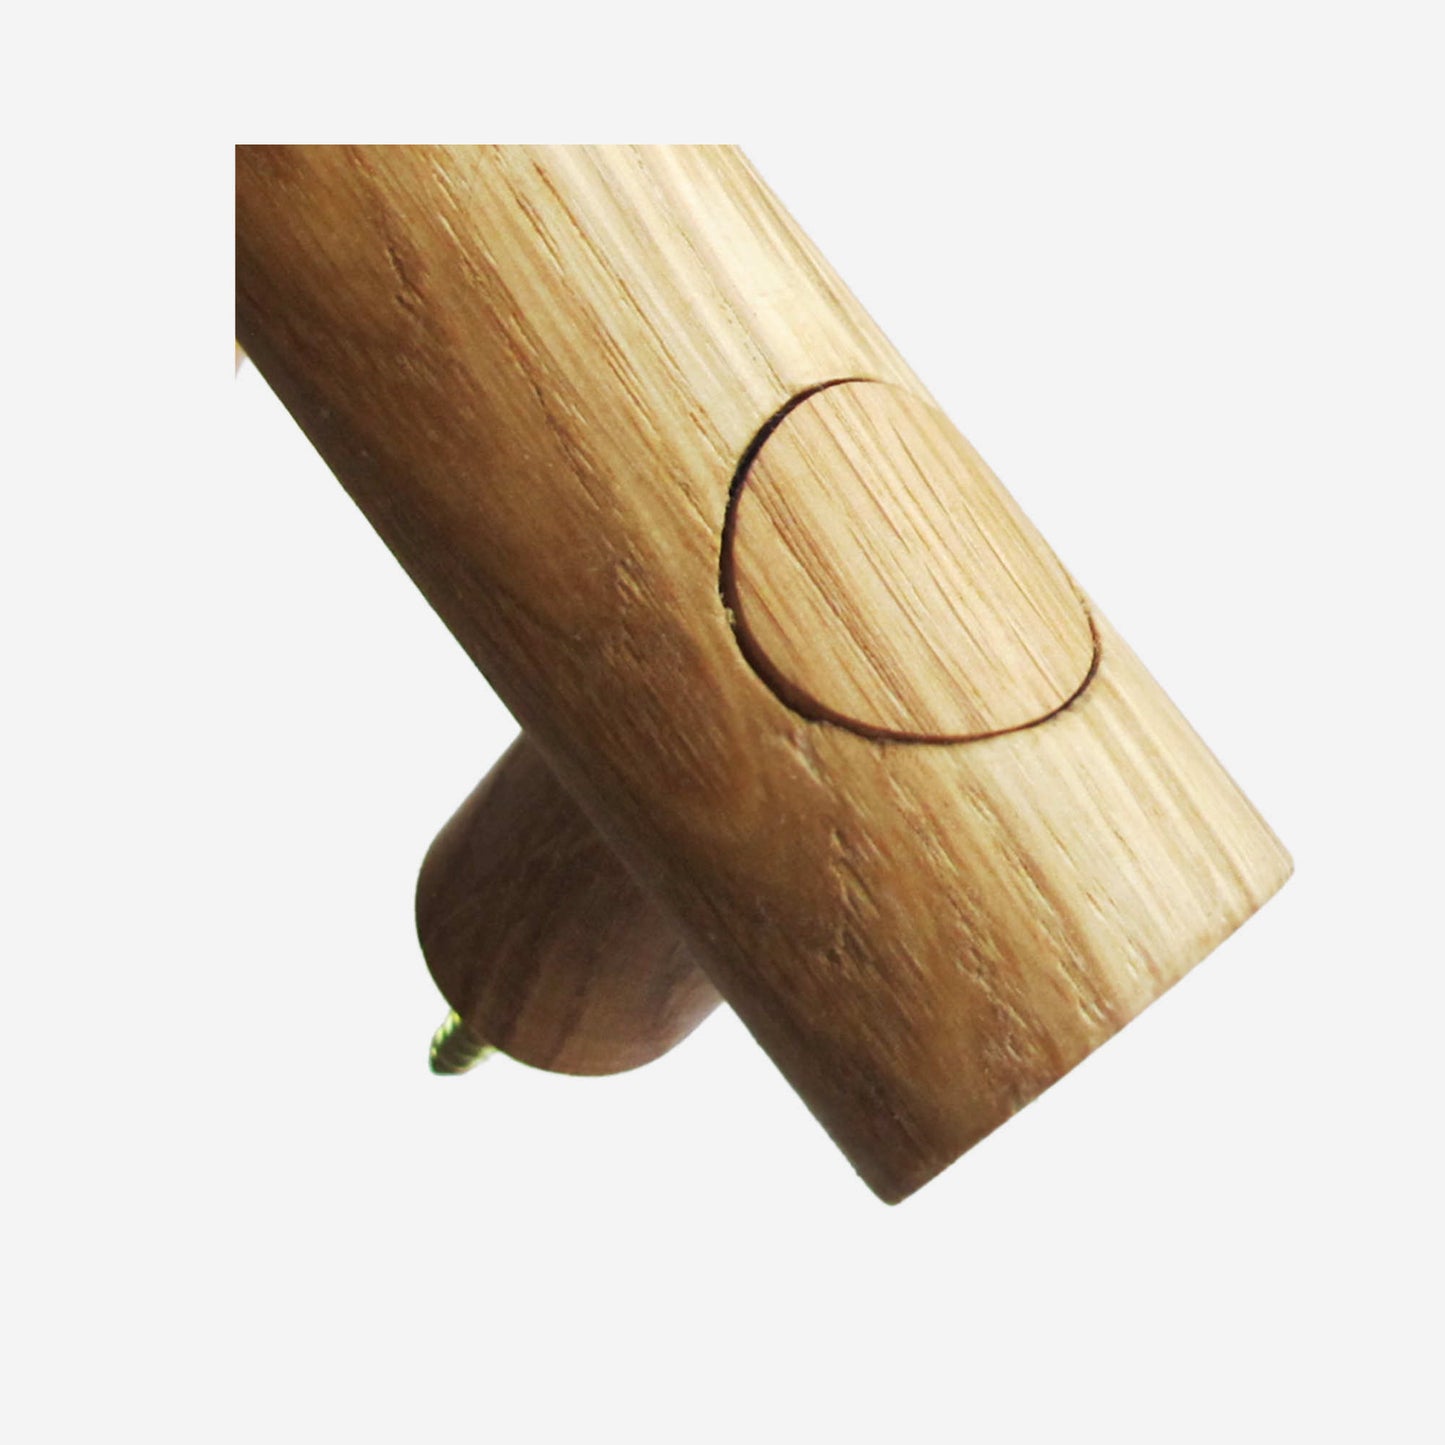 oak wood door handle for sauna